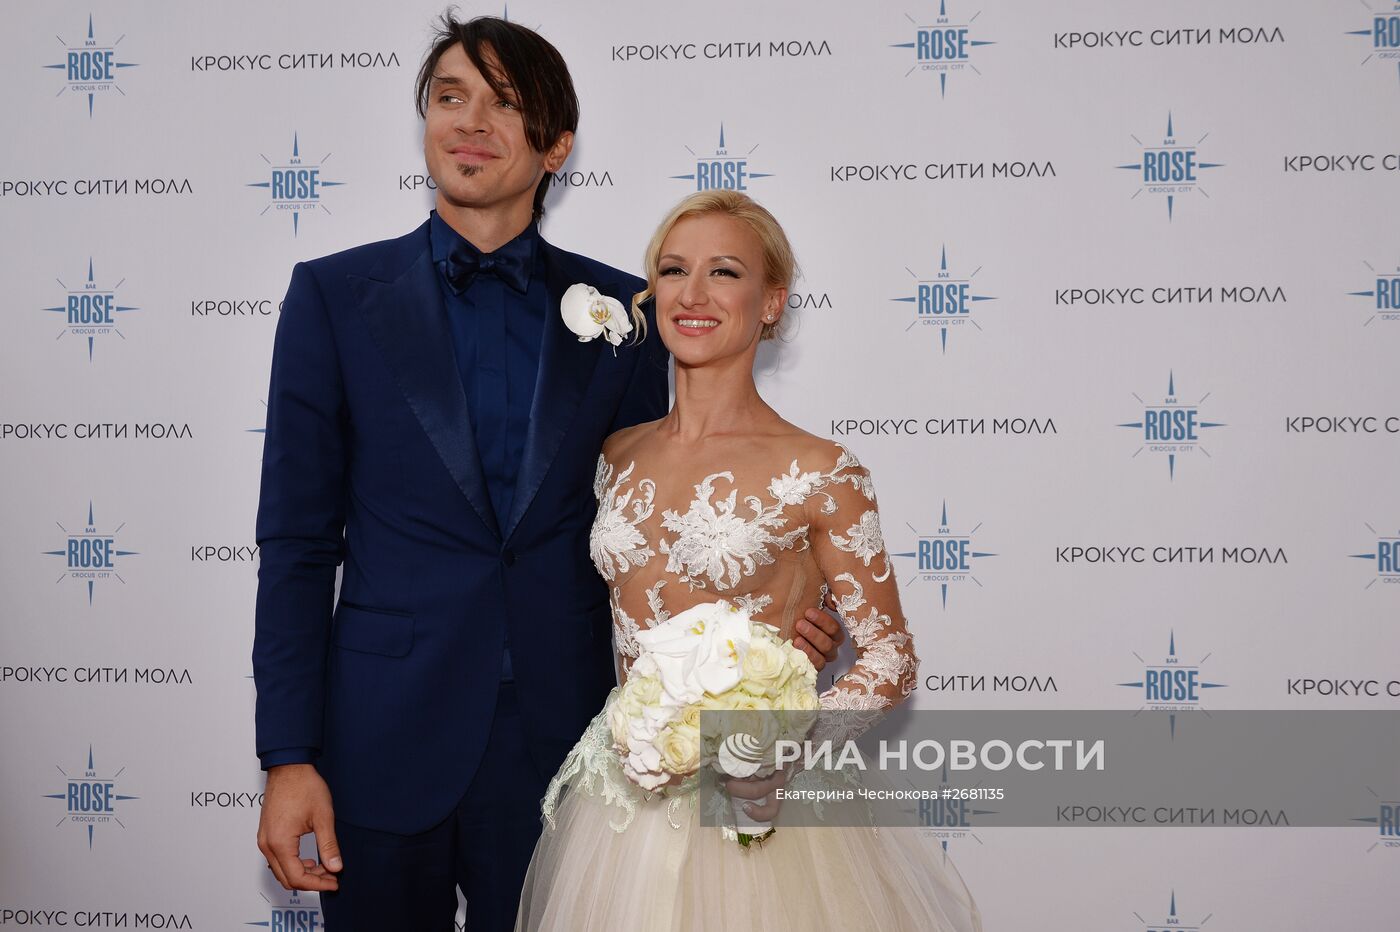 Свадьба фигуристов Максима Транькова и Татьяны Волосожар